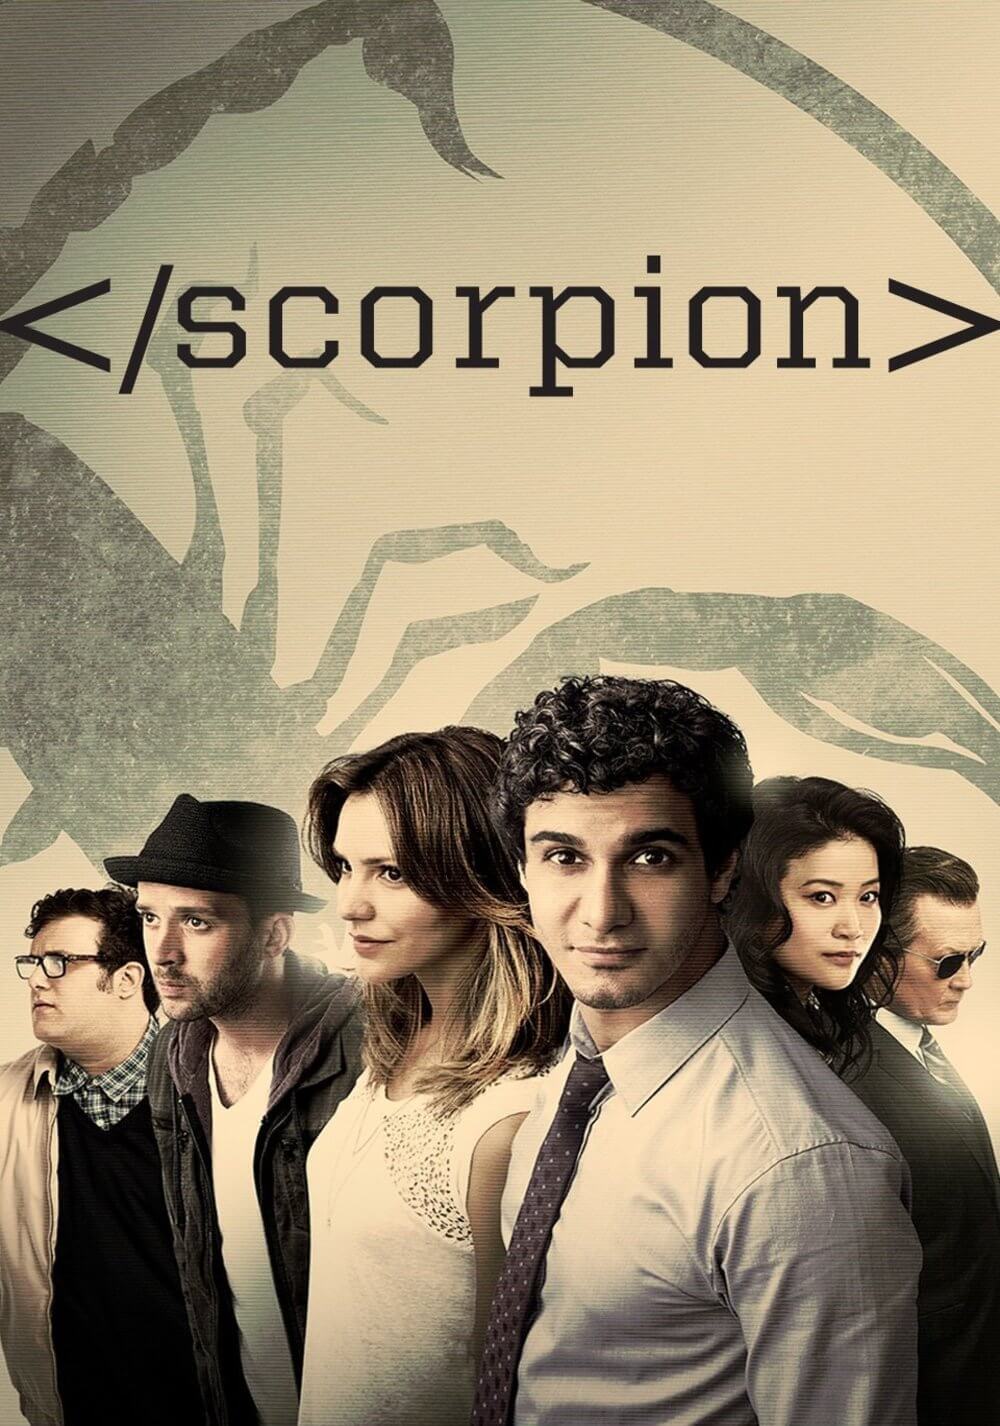 اسکورپیون (Scorpion)